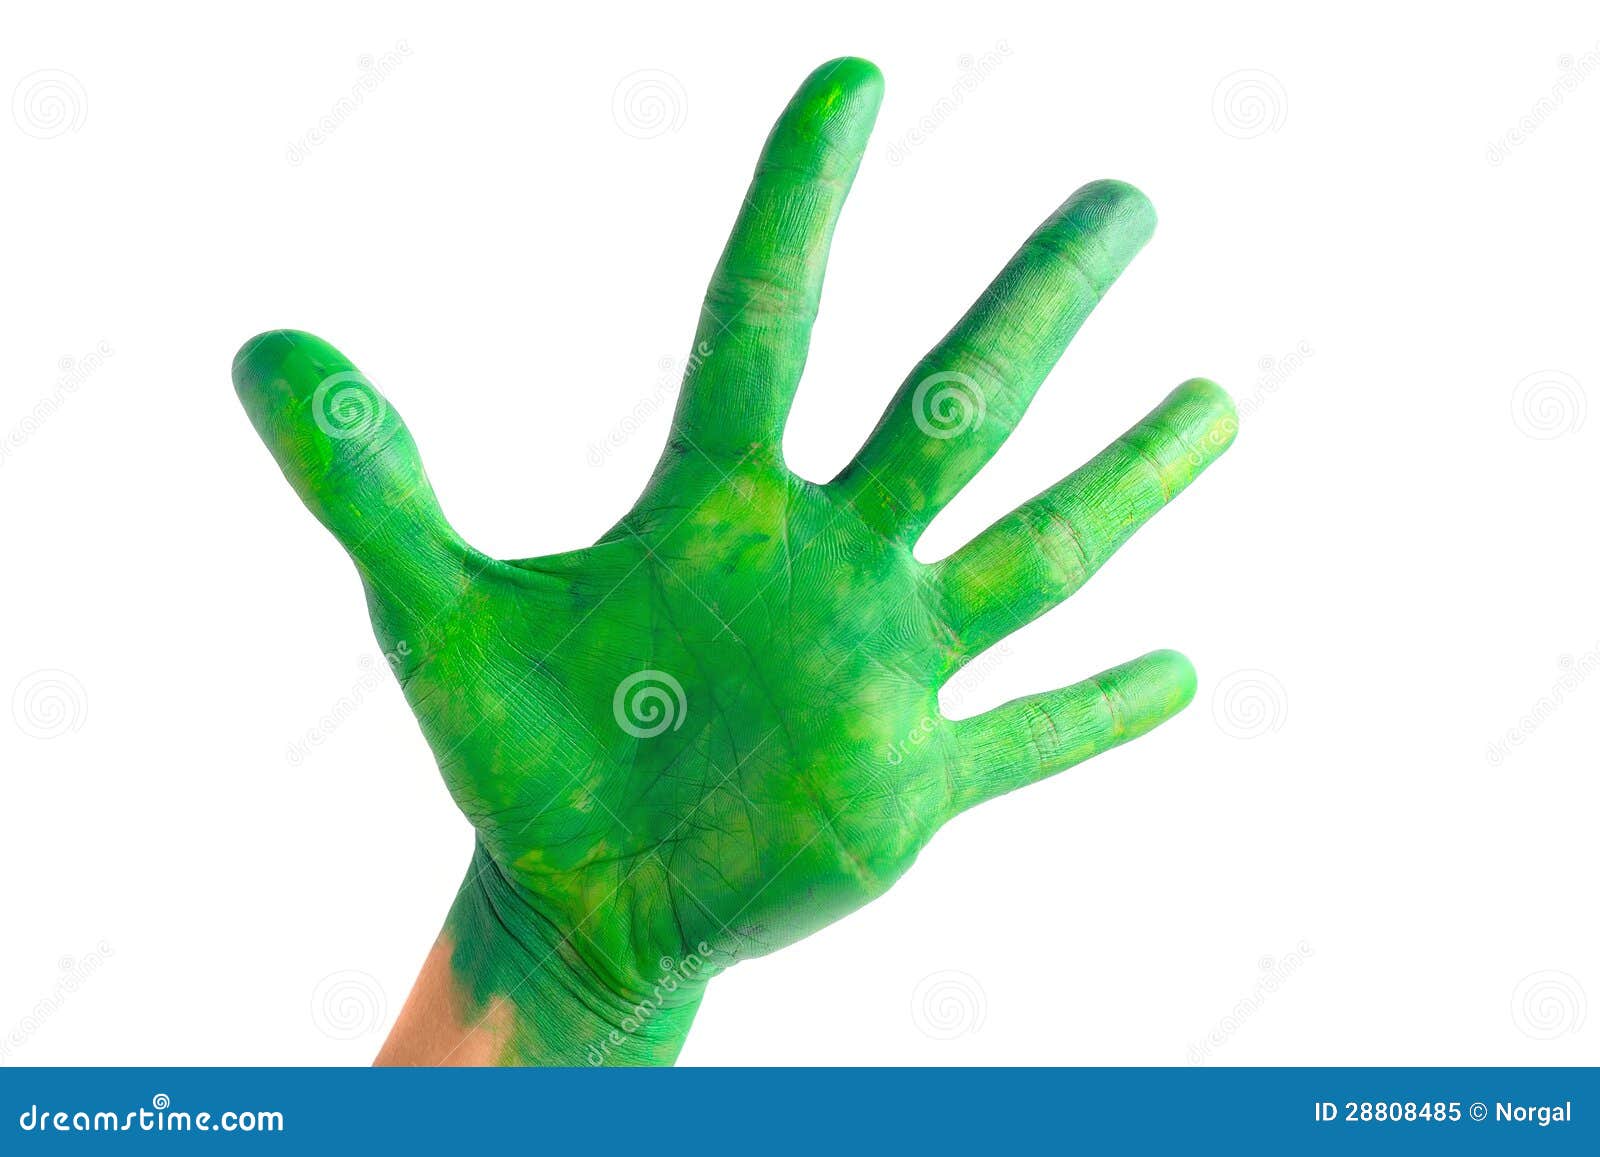 Правая рука зеленая. Зеленая рука. Зеленые ладошки. Ладошка зеленого цвета. Зеленая ладошка на белом фоне.